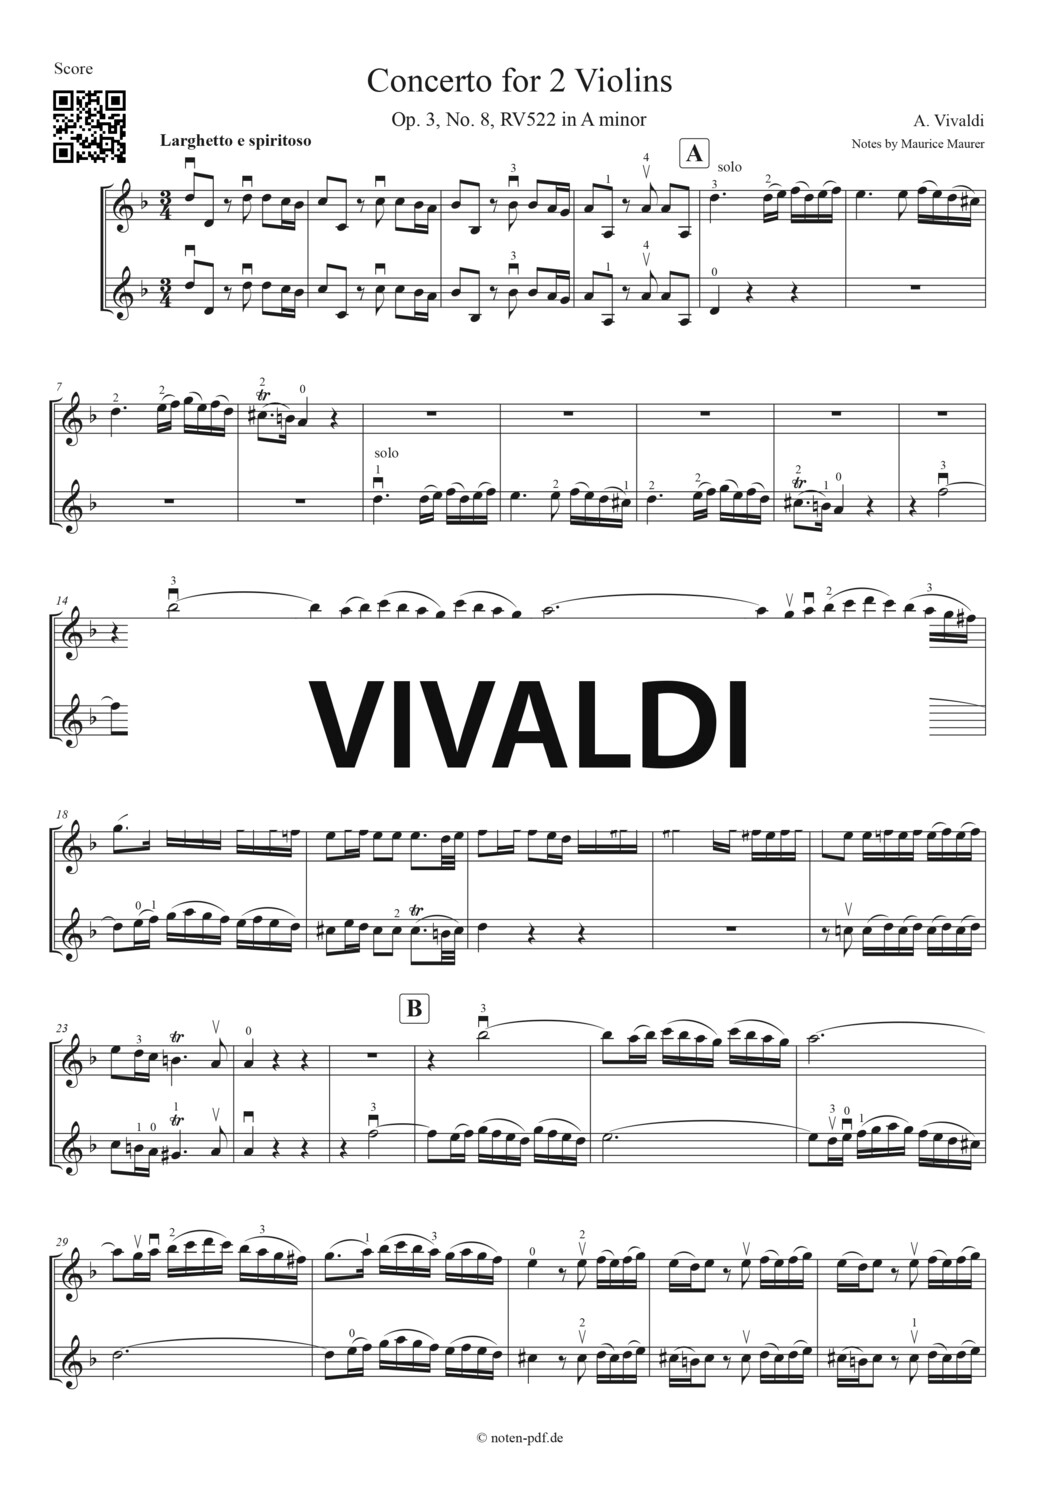 Vivaldi: Concerto for 2 Violins in A minor - 2. Movement